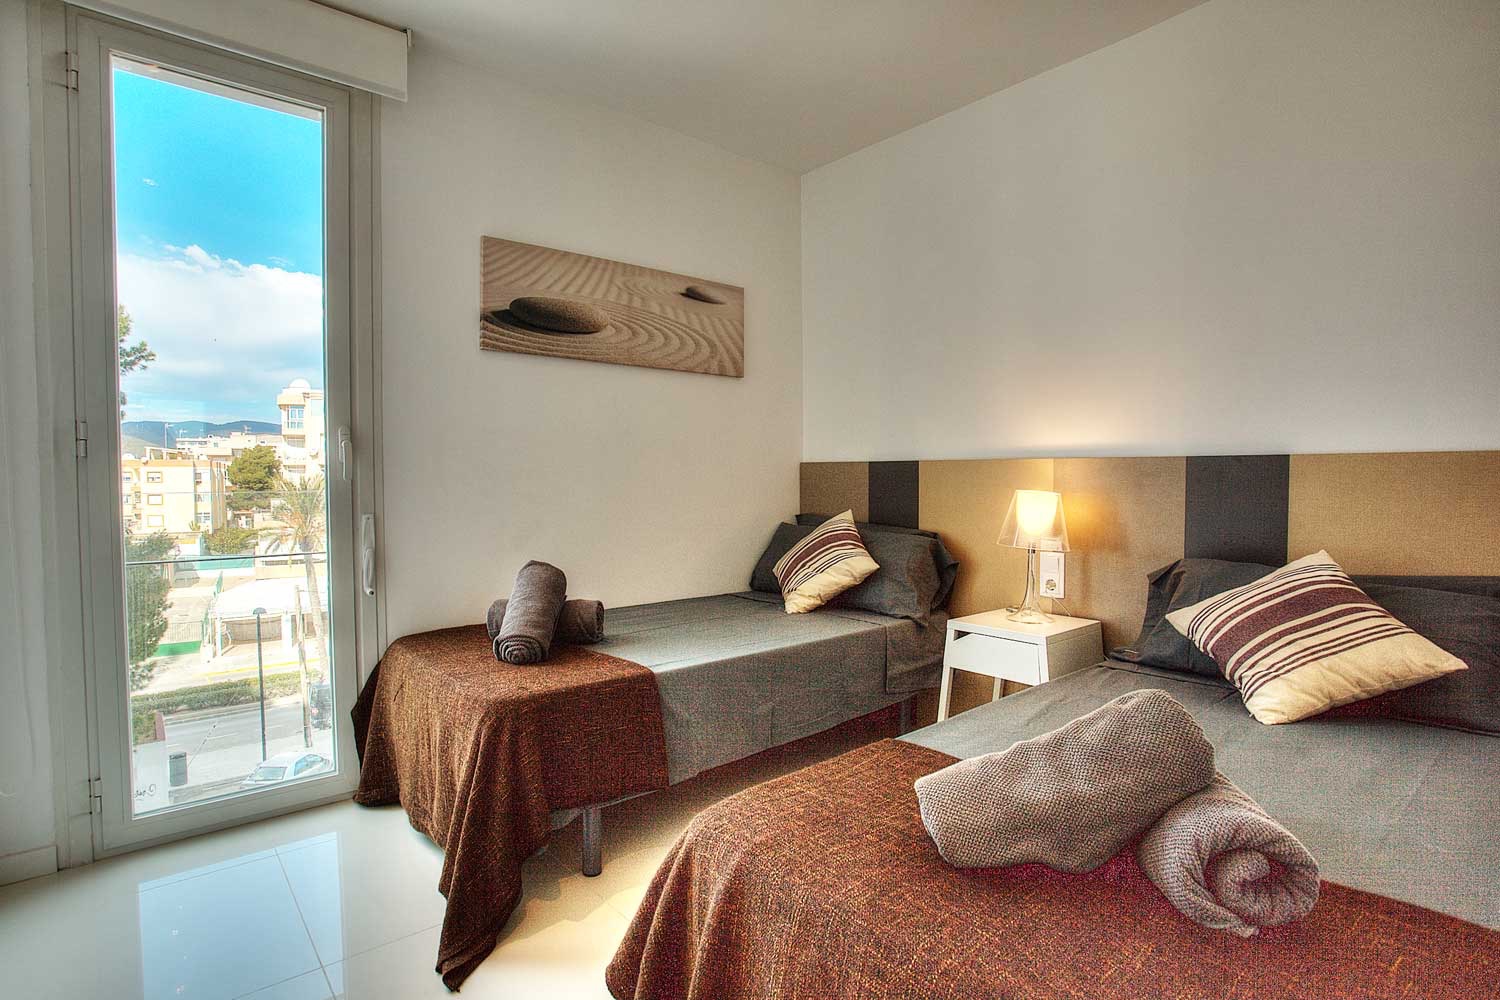 Fantastique appartement avec vue frontale sur la mer, à vendre à Playa d’en Bossa, Ibiza